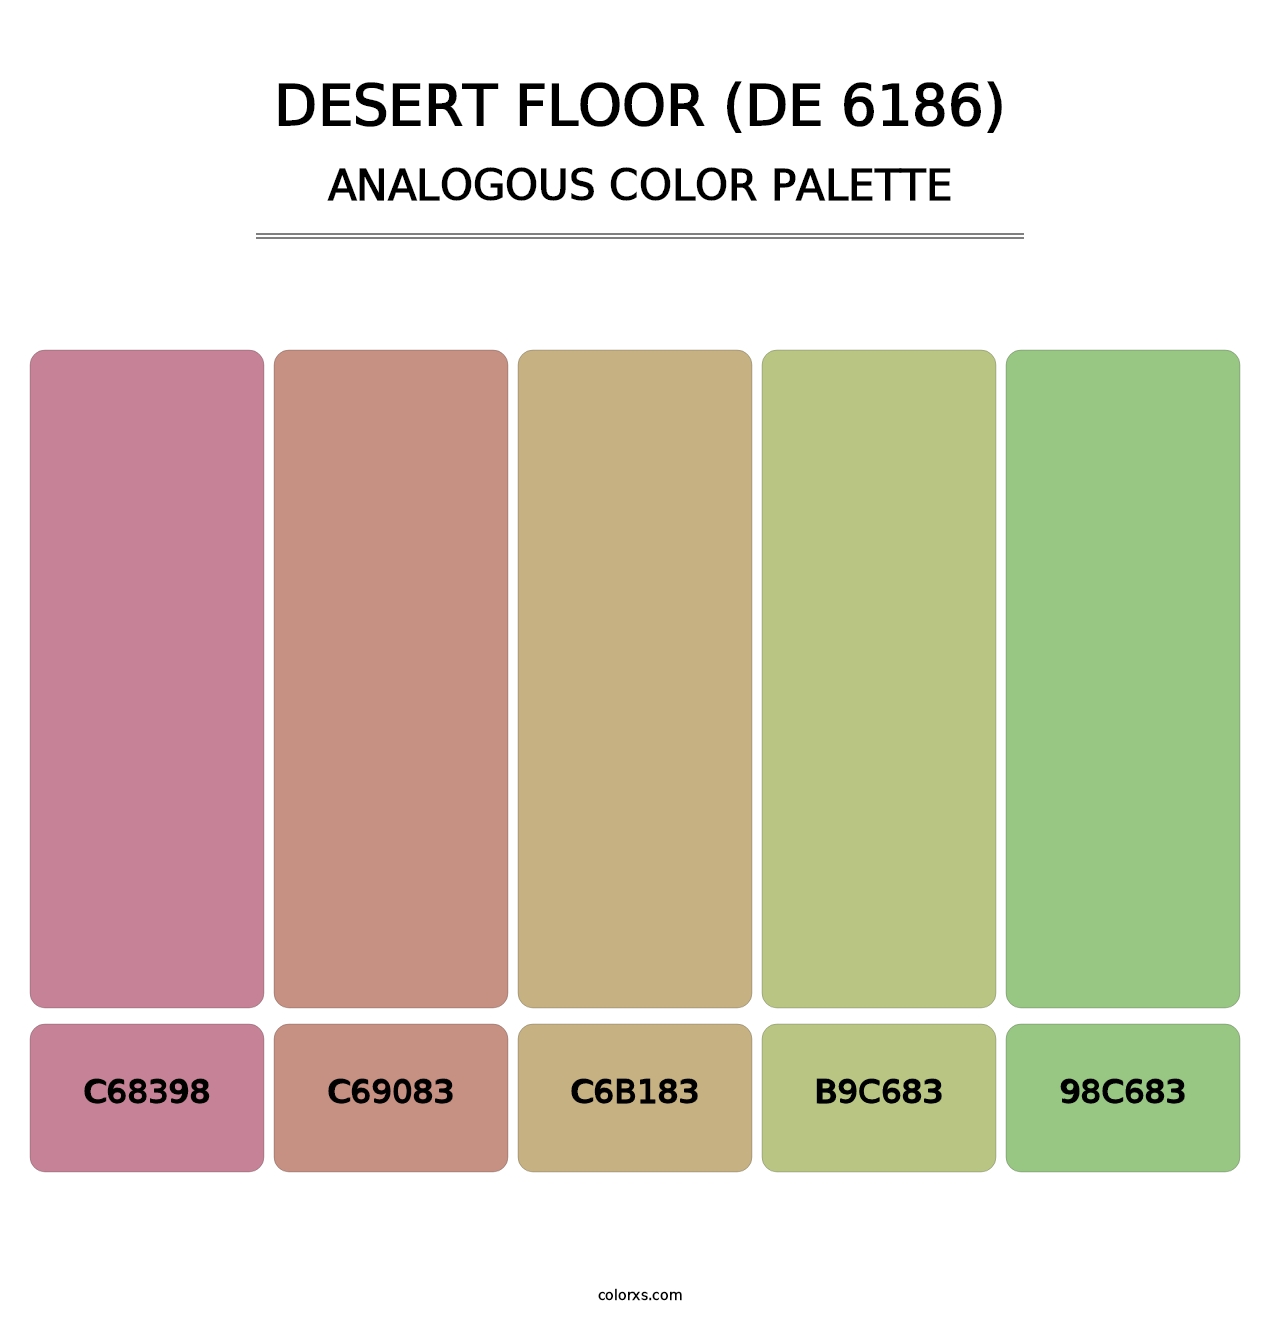 Desert Floor (DE 6186) - Analogous Color Palette